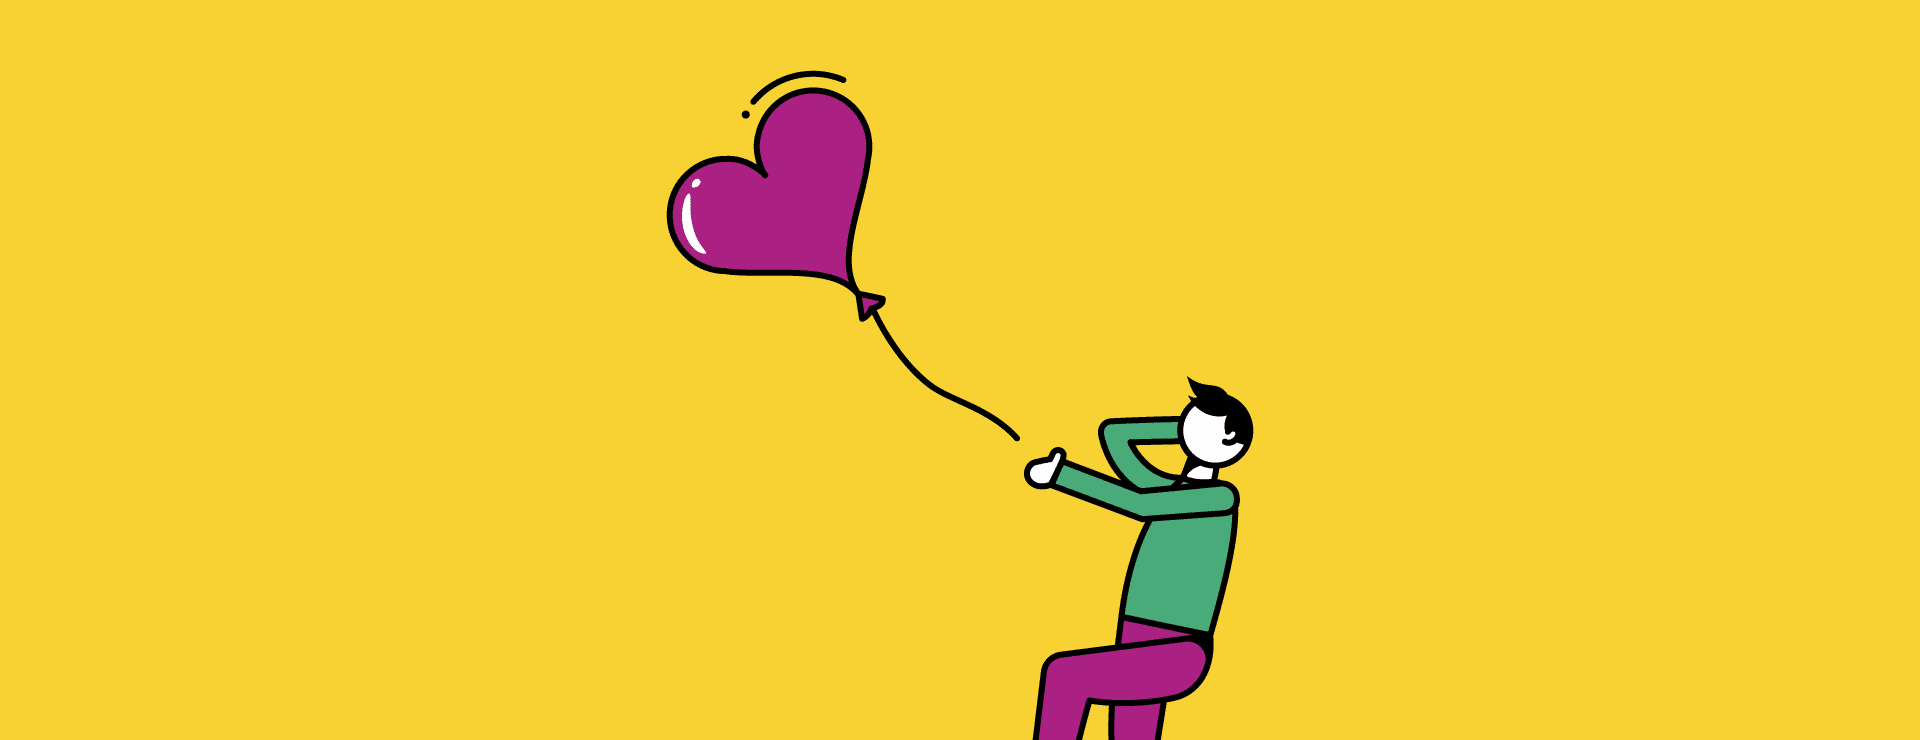 Illustratie van iemand die een ballon verliest die symbool staat voor liefhebben en intimiteit